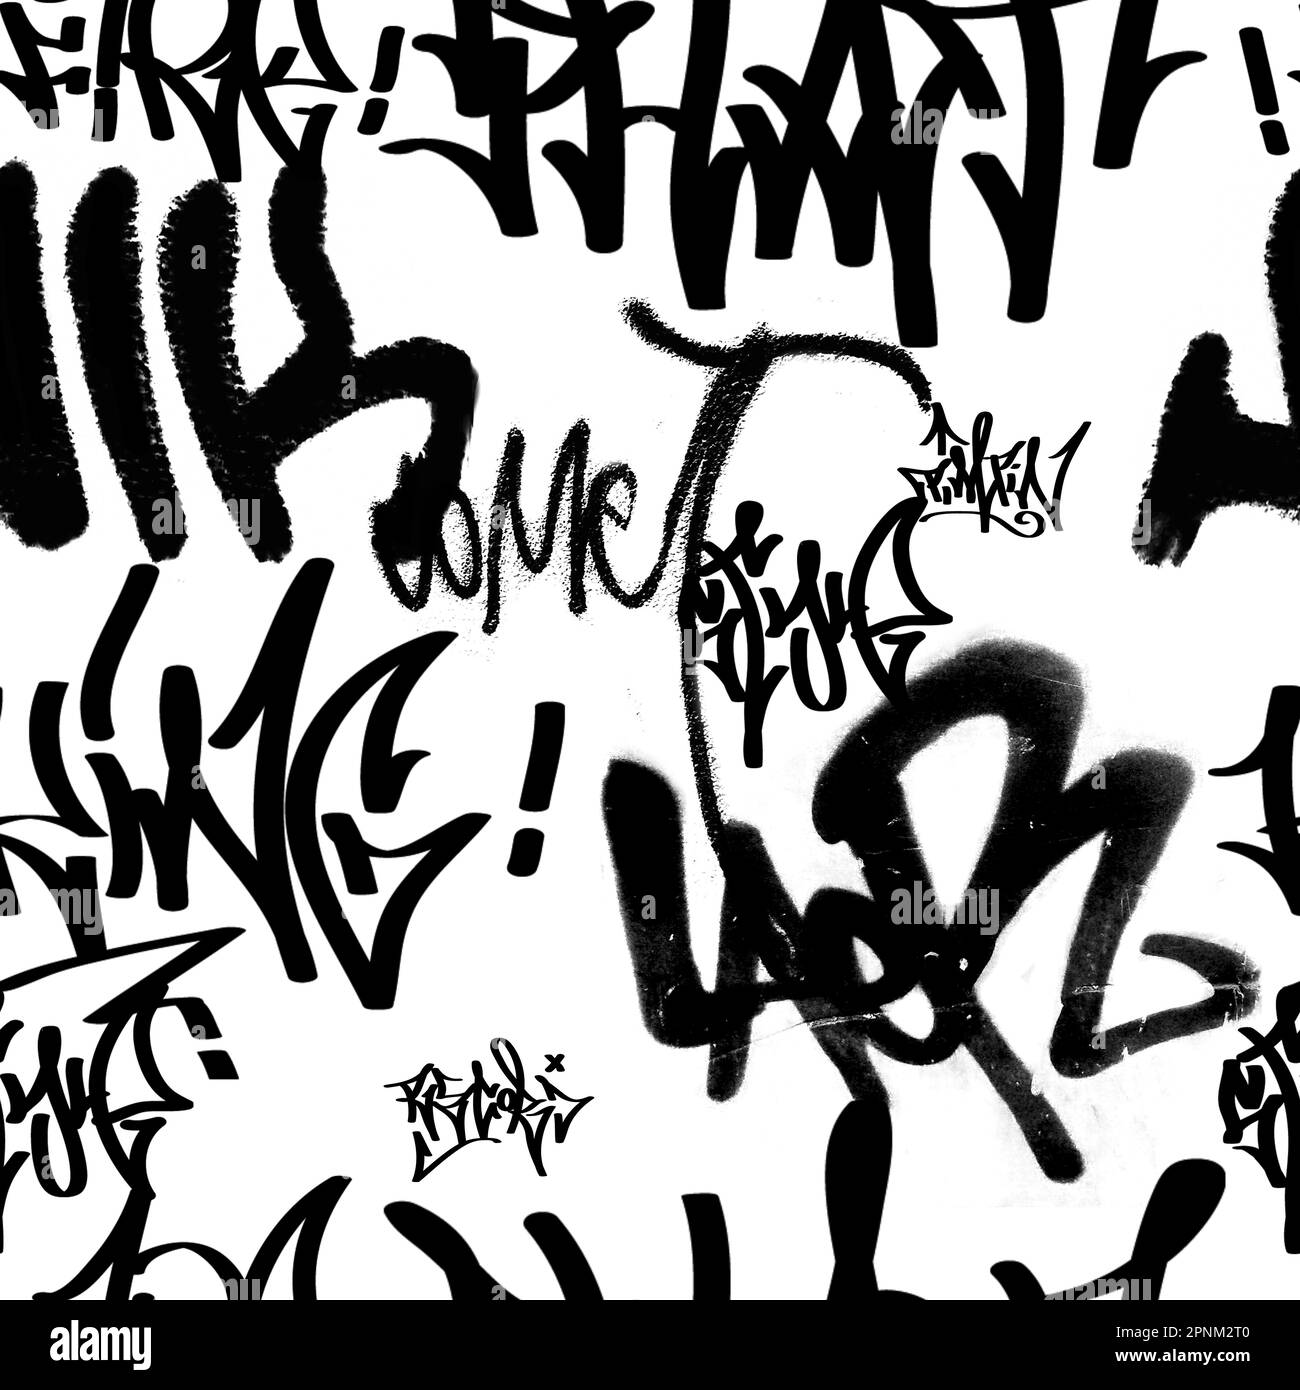 Seamless hand writing graffiti pattern, street art, painting. Stock Photo